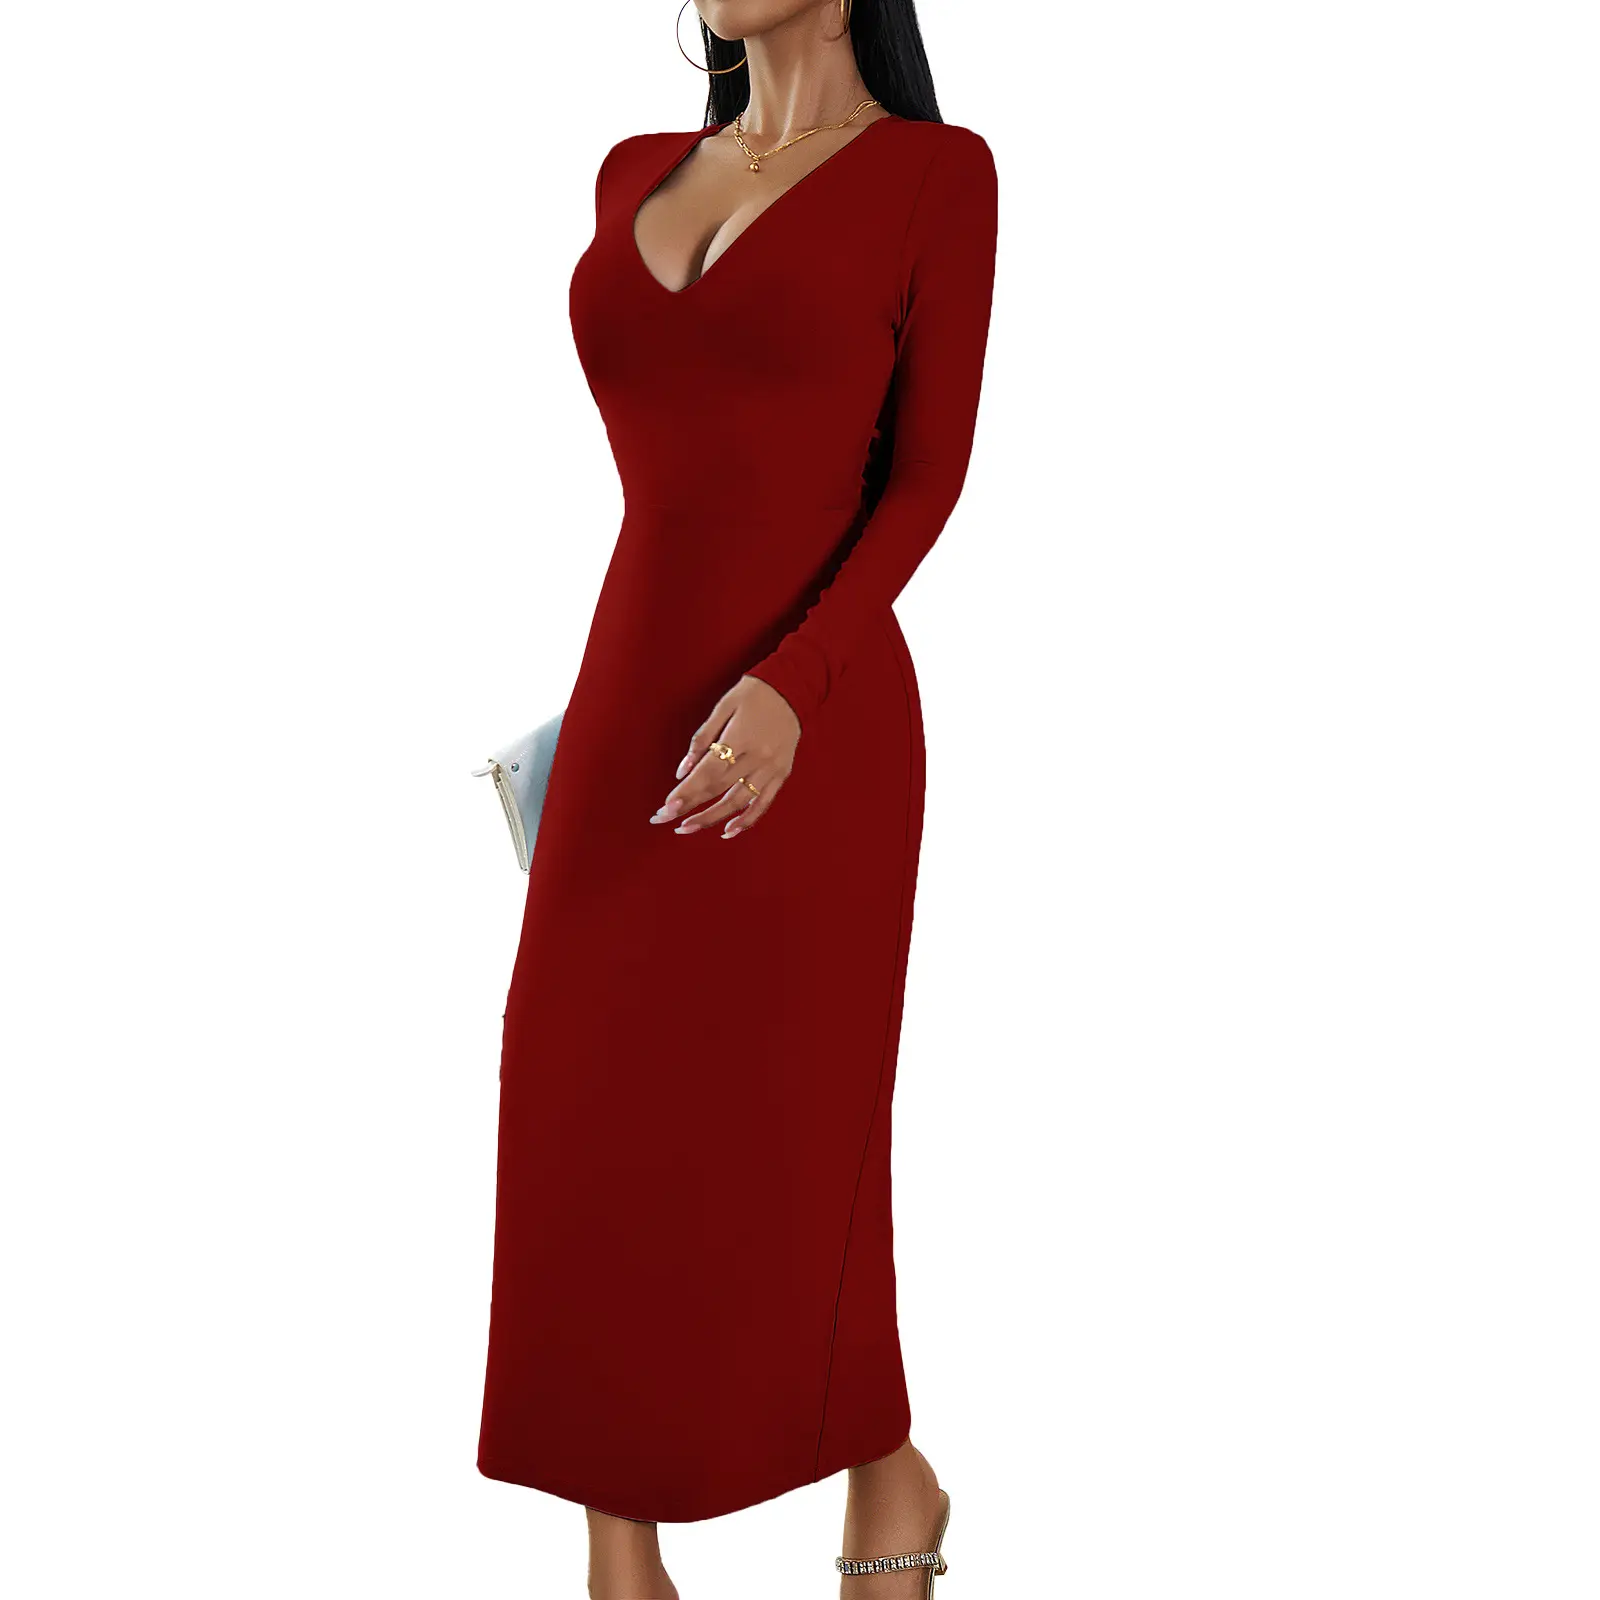 D543 महिलाओं की सेक्सी सस्ती बॉडीकॉन स्लिप मैक्सी ड्रेस कैजुअल स्फेटी स्ट्रैप्स बैकलेस लाल लंबी मैक्सी बॉडीकॉन ड्रेस